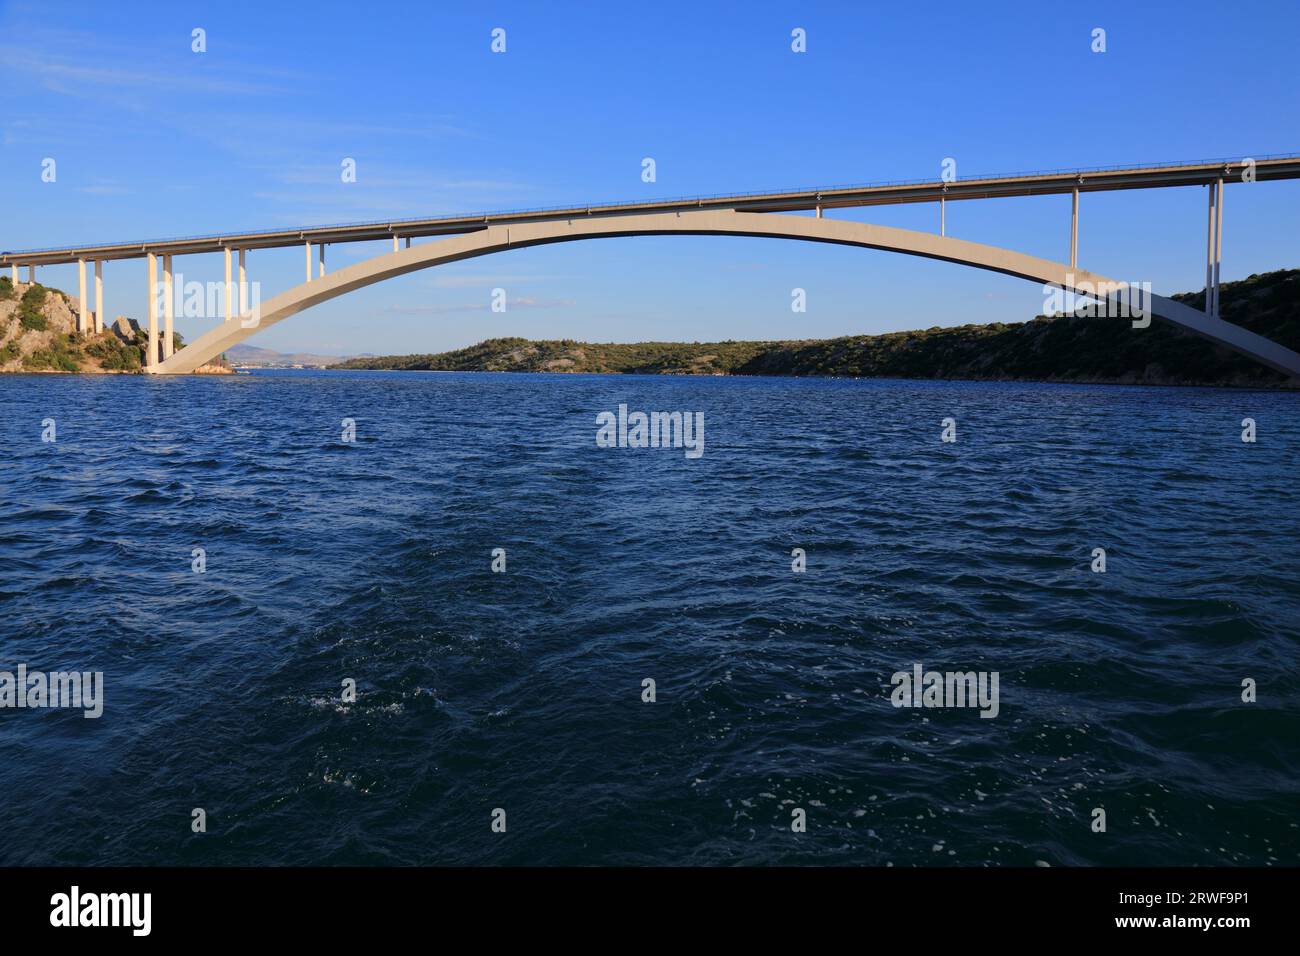 Sibenik-Brücke (Sibenski Most) der Adria-Autobahn (Jadranska Magistrala) über den Fluss Krka in Kroatien. Betonbogenbrücke. Stockfoto